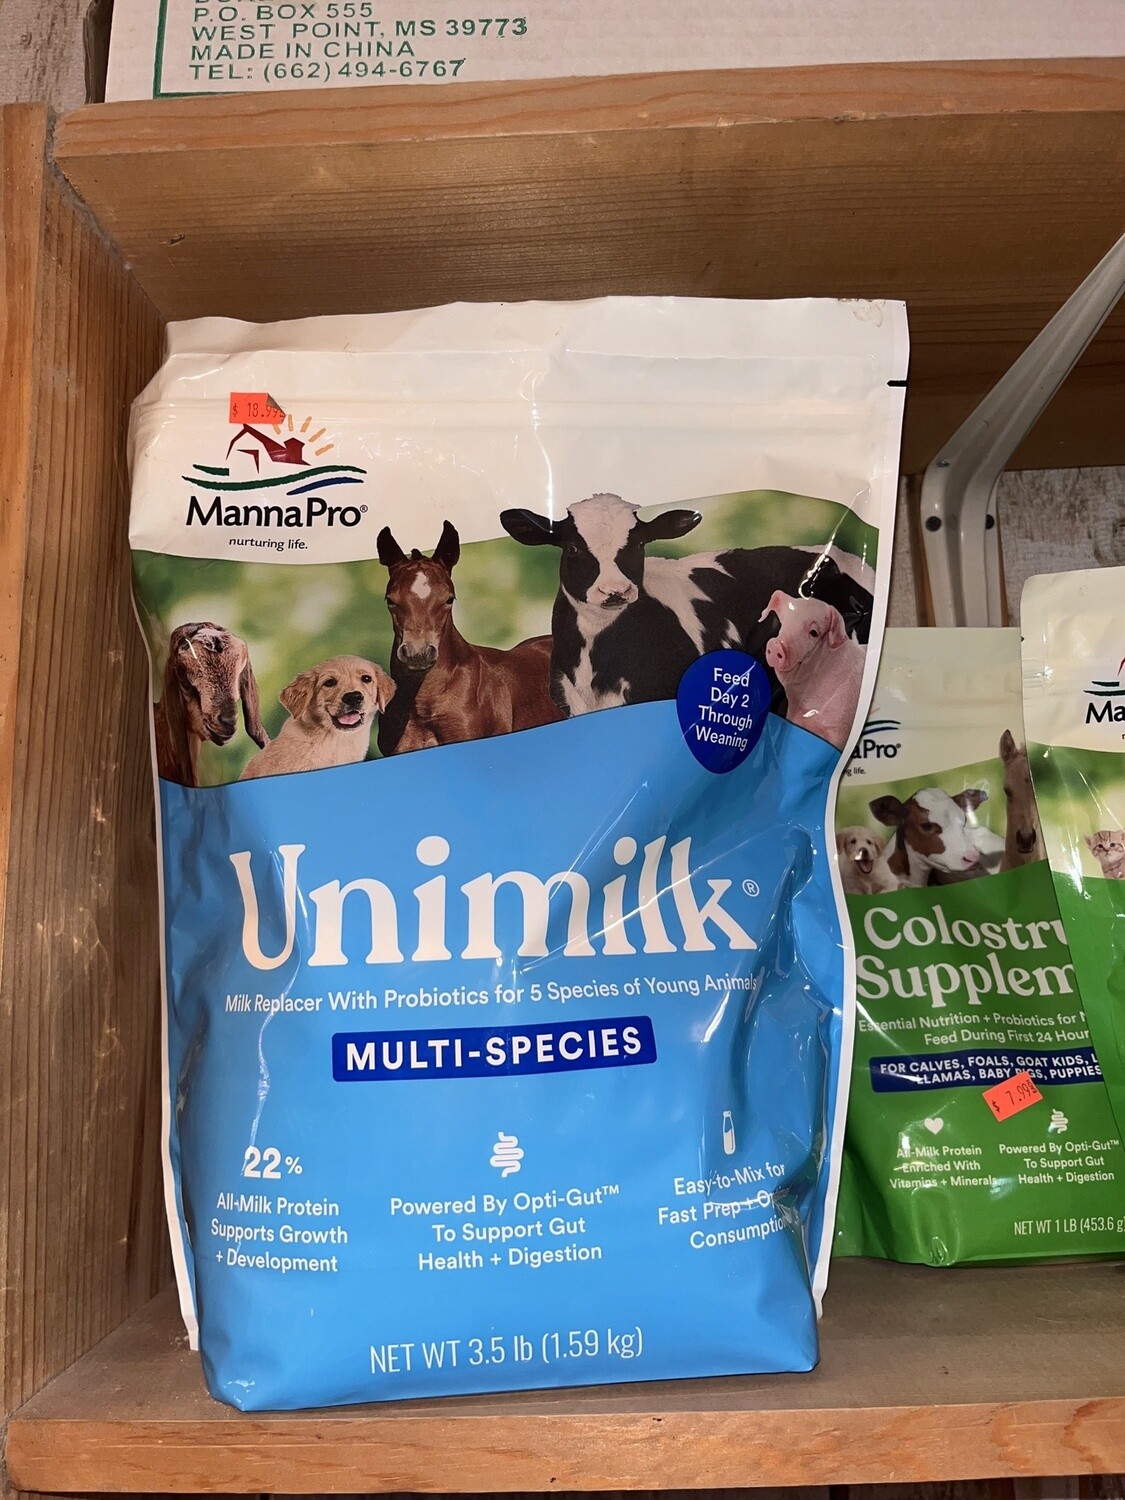 Unimilk-Milk Replacer-3.5 lb